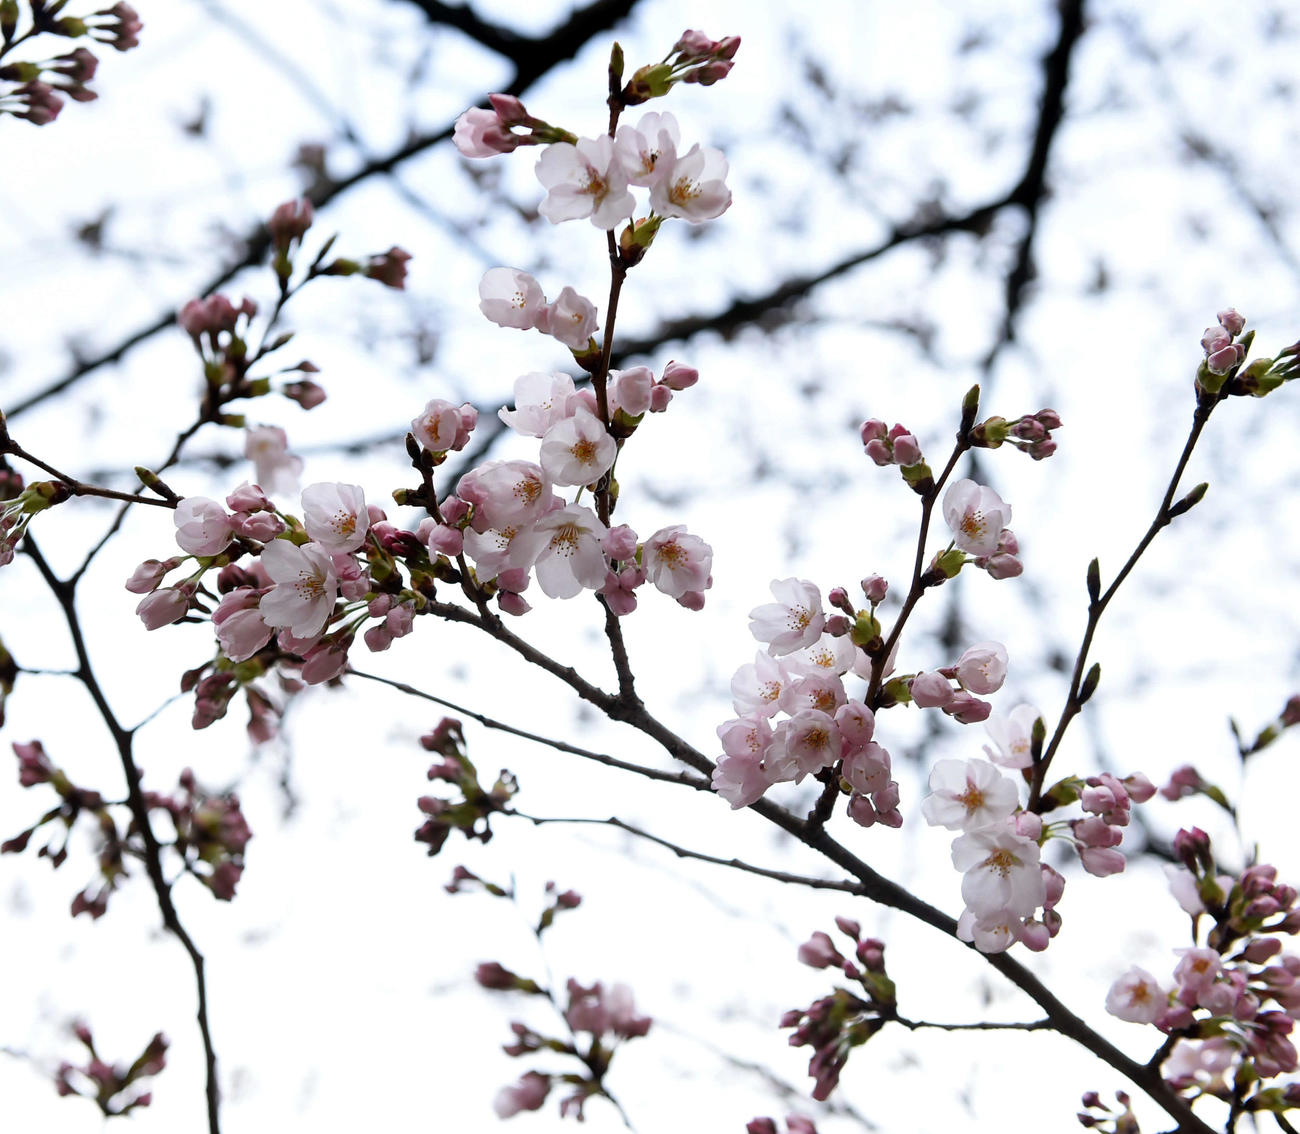 仙台市内の榴岡公園にある桜も開花し始めた